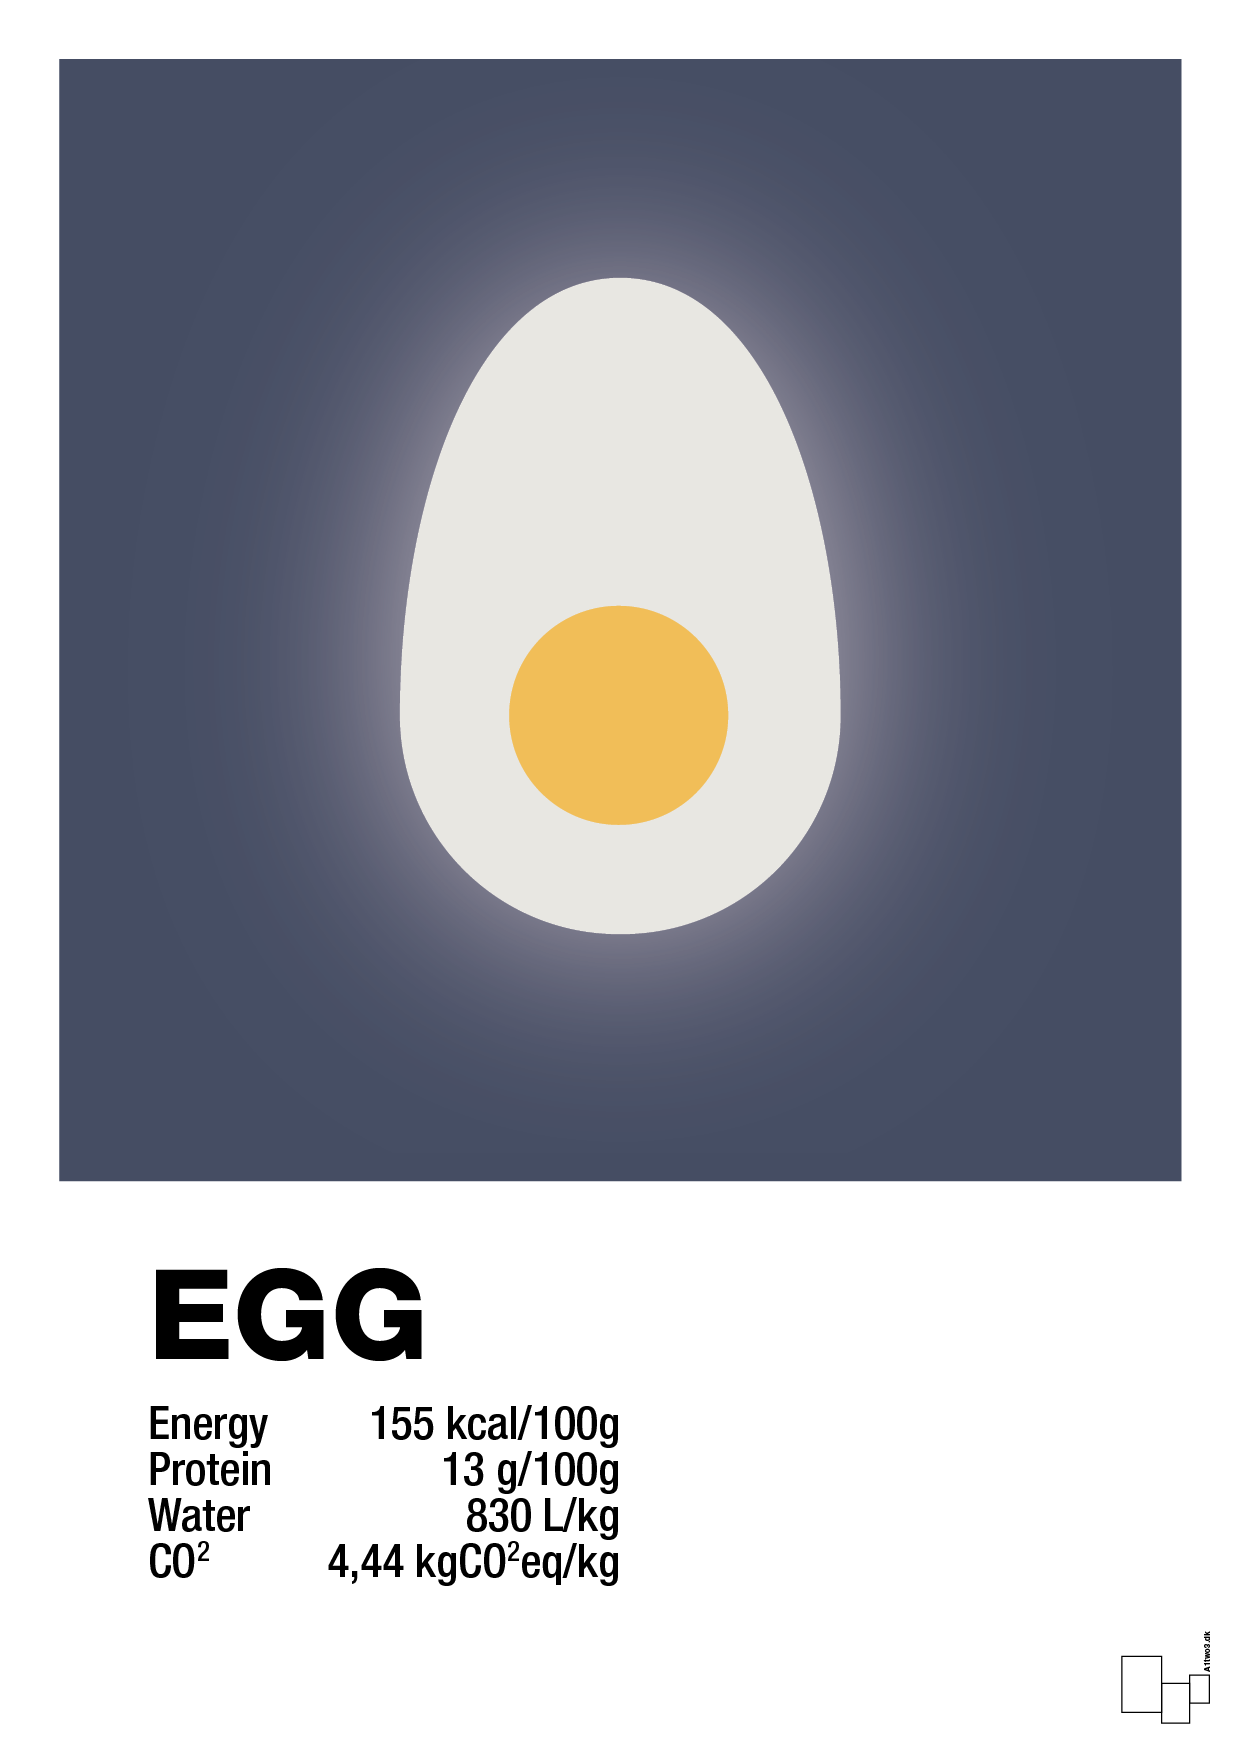 egg nutrition og miljø - Plakat med Mad & Drikke i Petrol